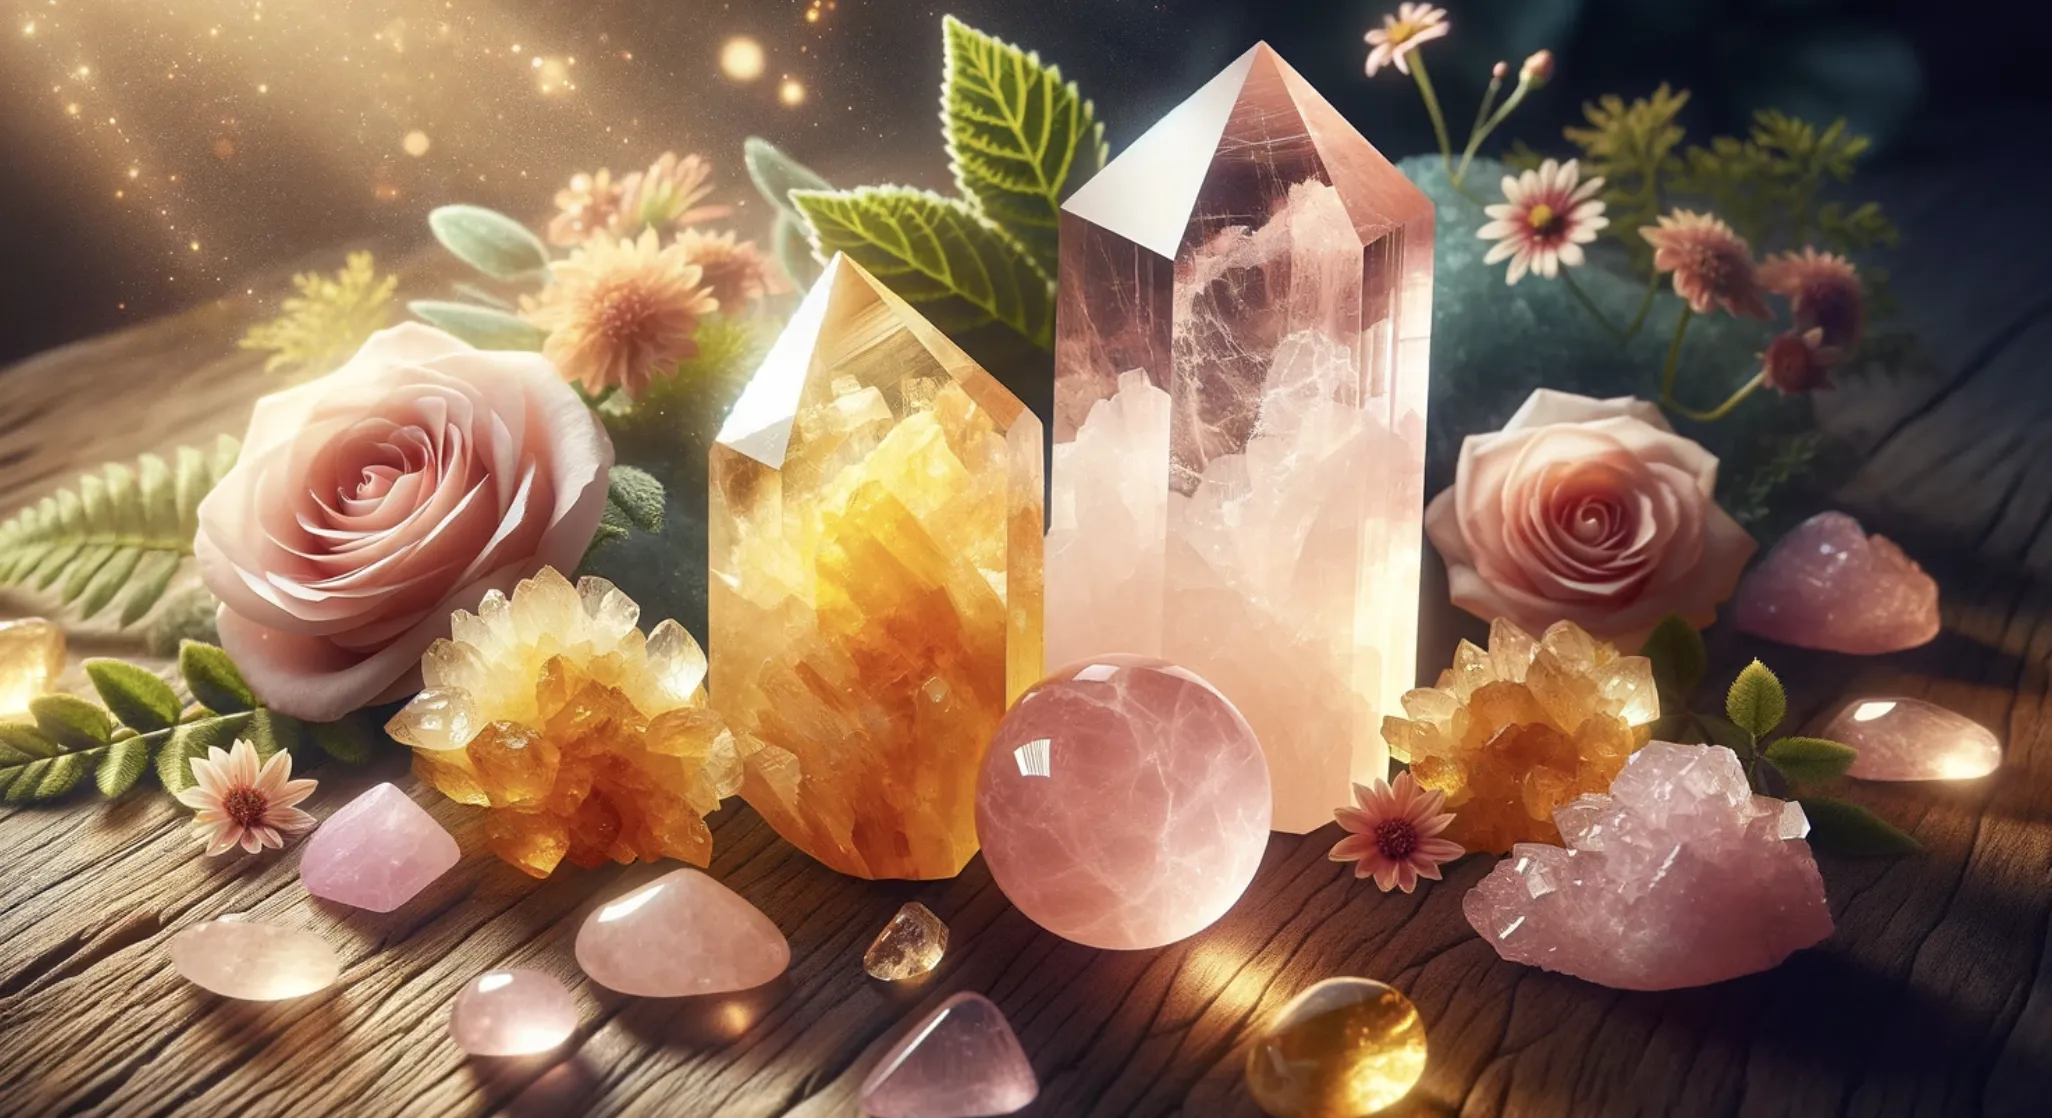 rose quartz and citrine crystals